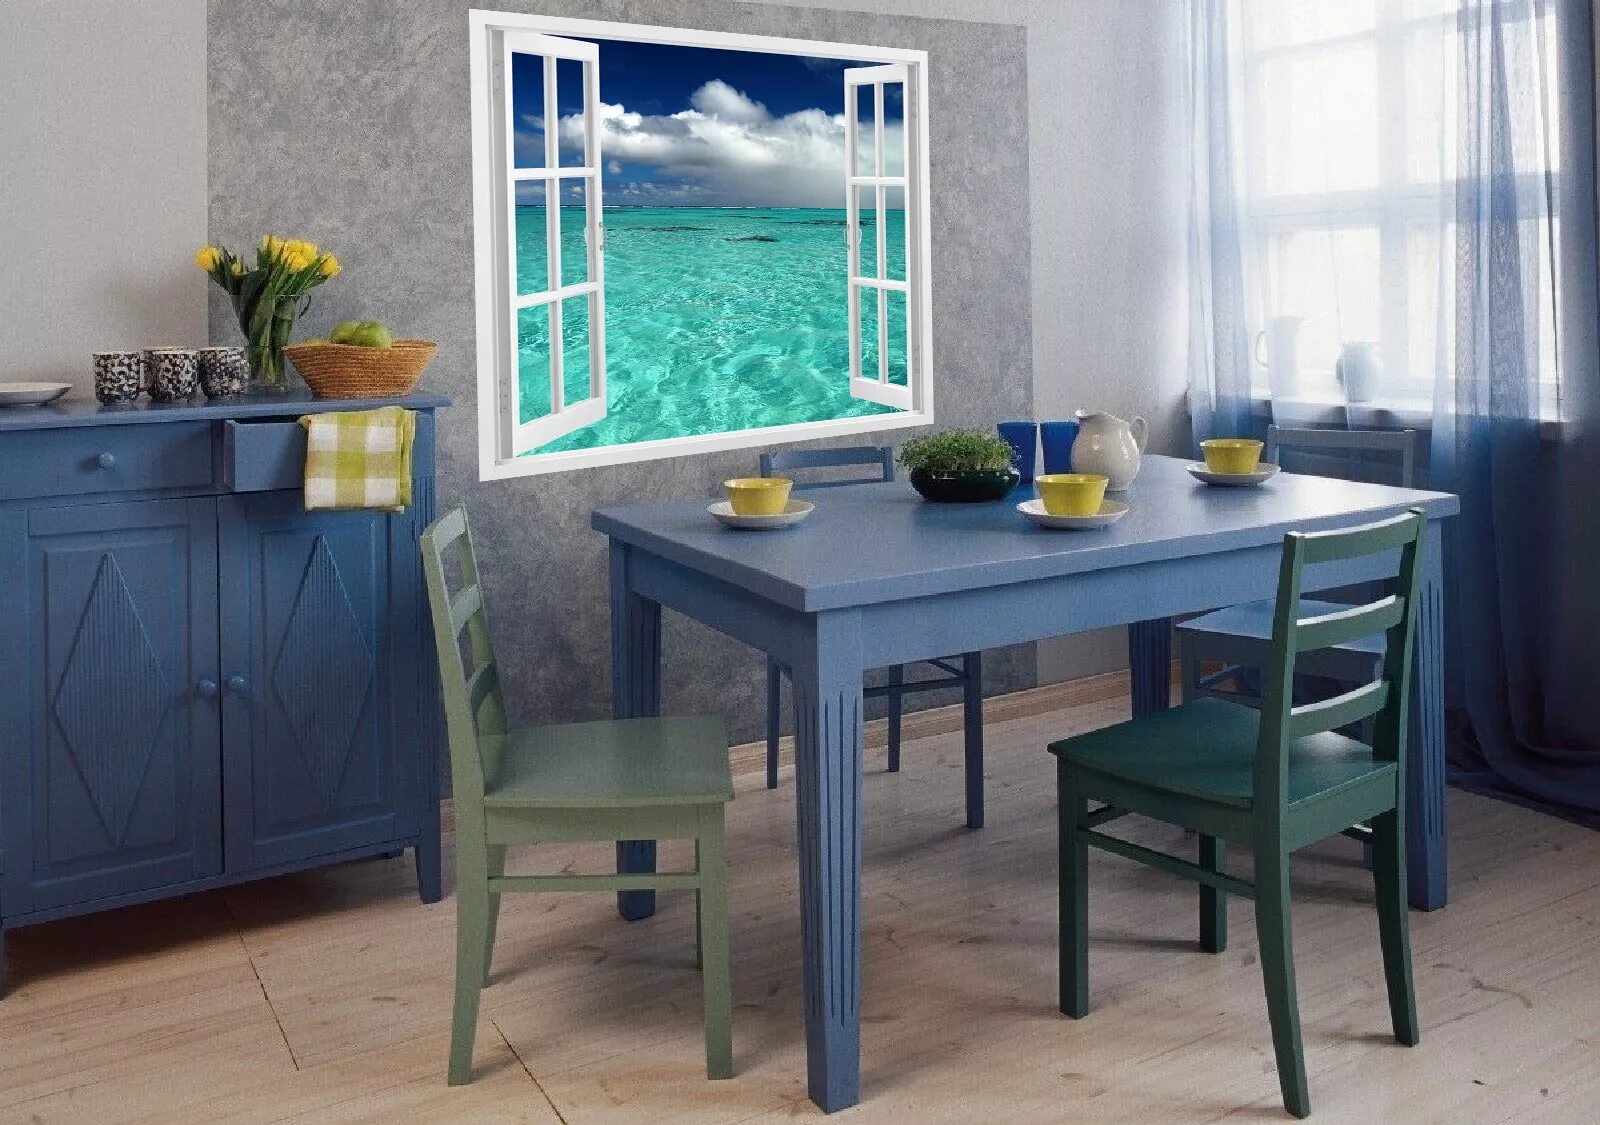 Фотообои в интерьере кухни. Стол обеденный синий. Стол кухонный синий. Синий стол на кухню. Возле стола представлявшего сильно уменьшенную